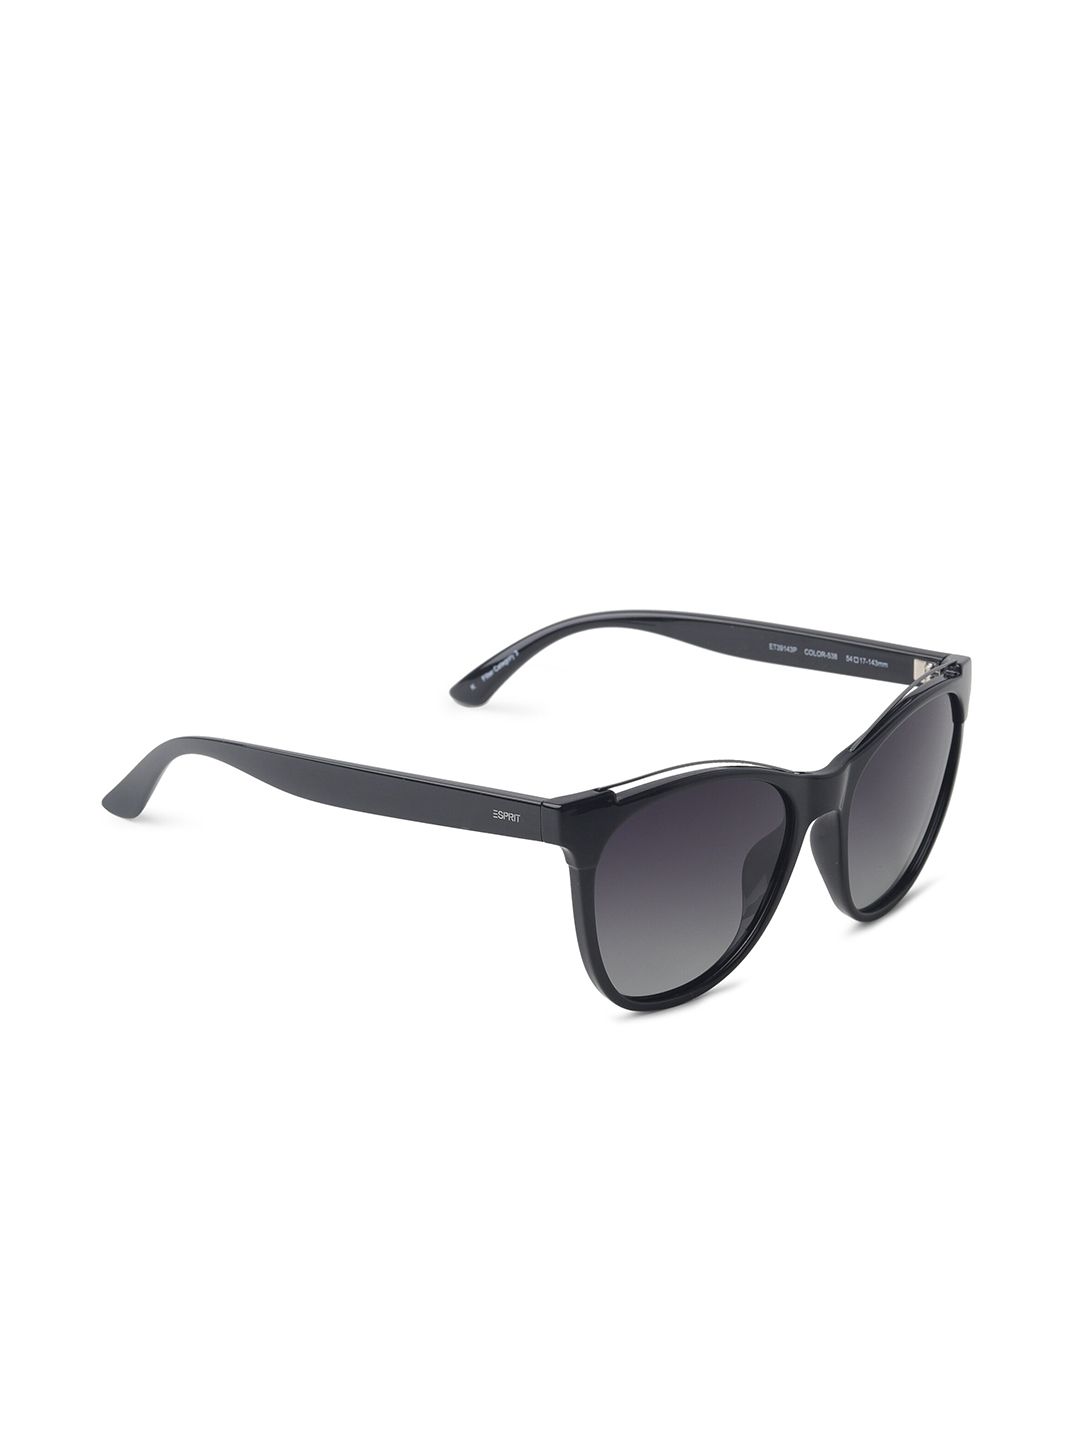 ESPRIT Women Black Lens & Black Frame Polarised Lens Round Sunglasses ET39143P-54-538 Price in India